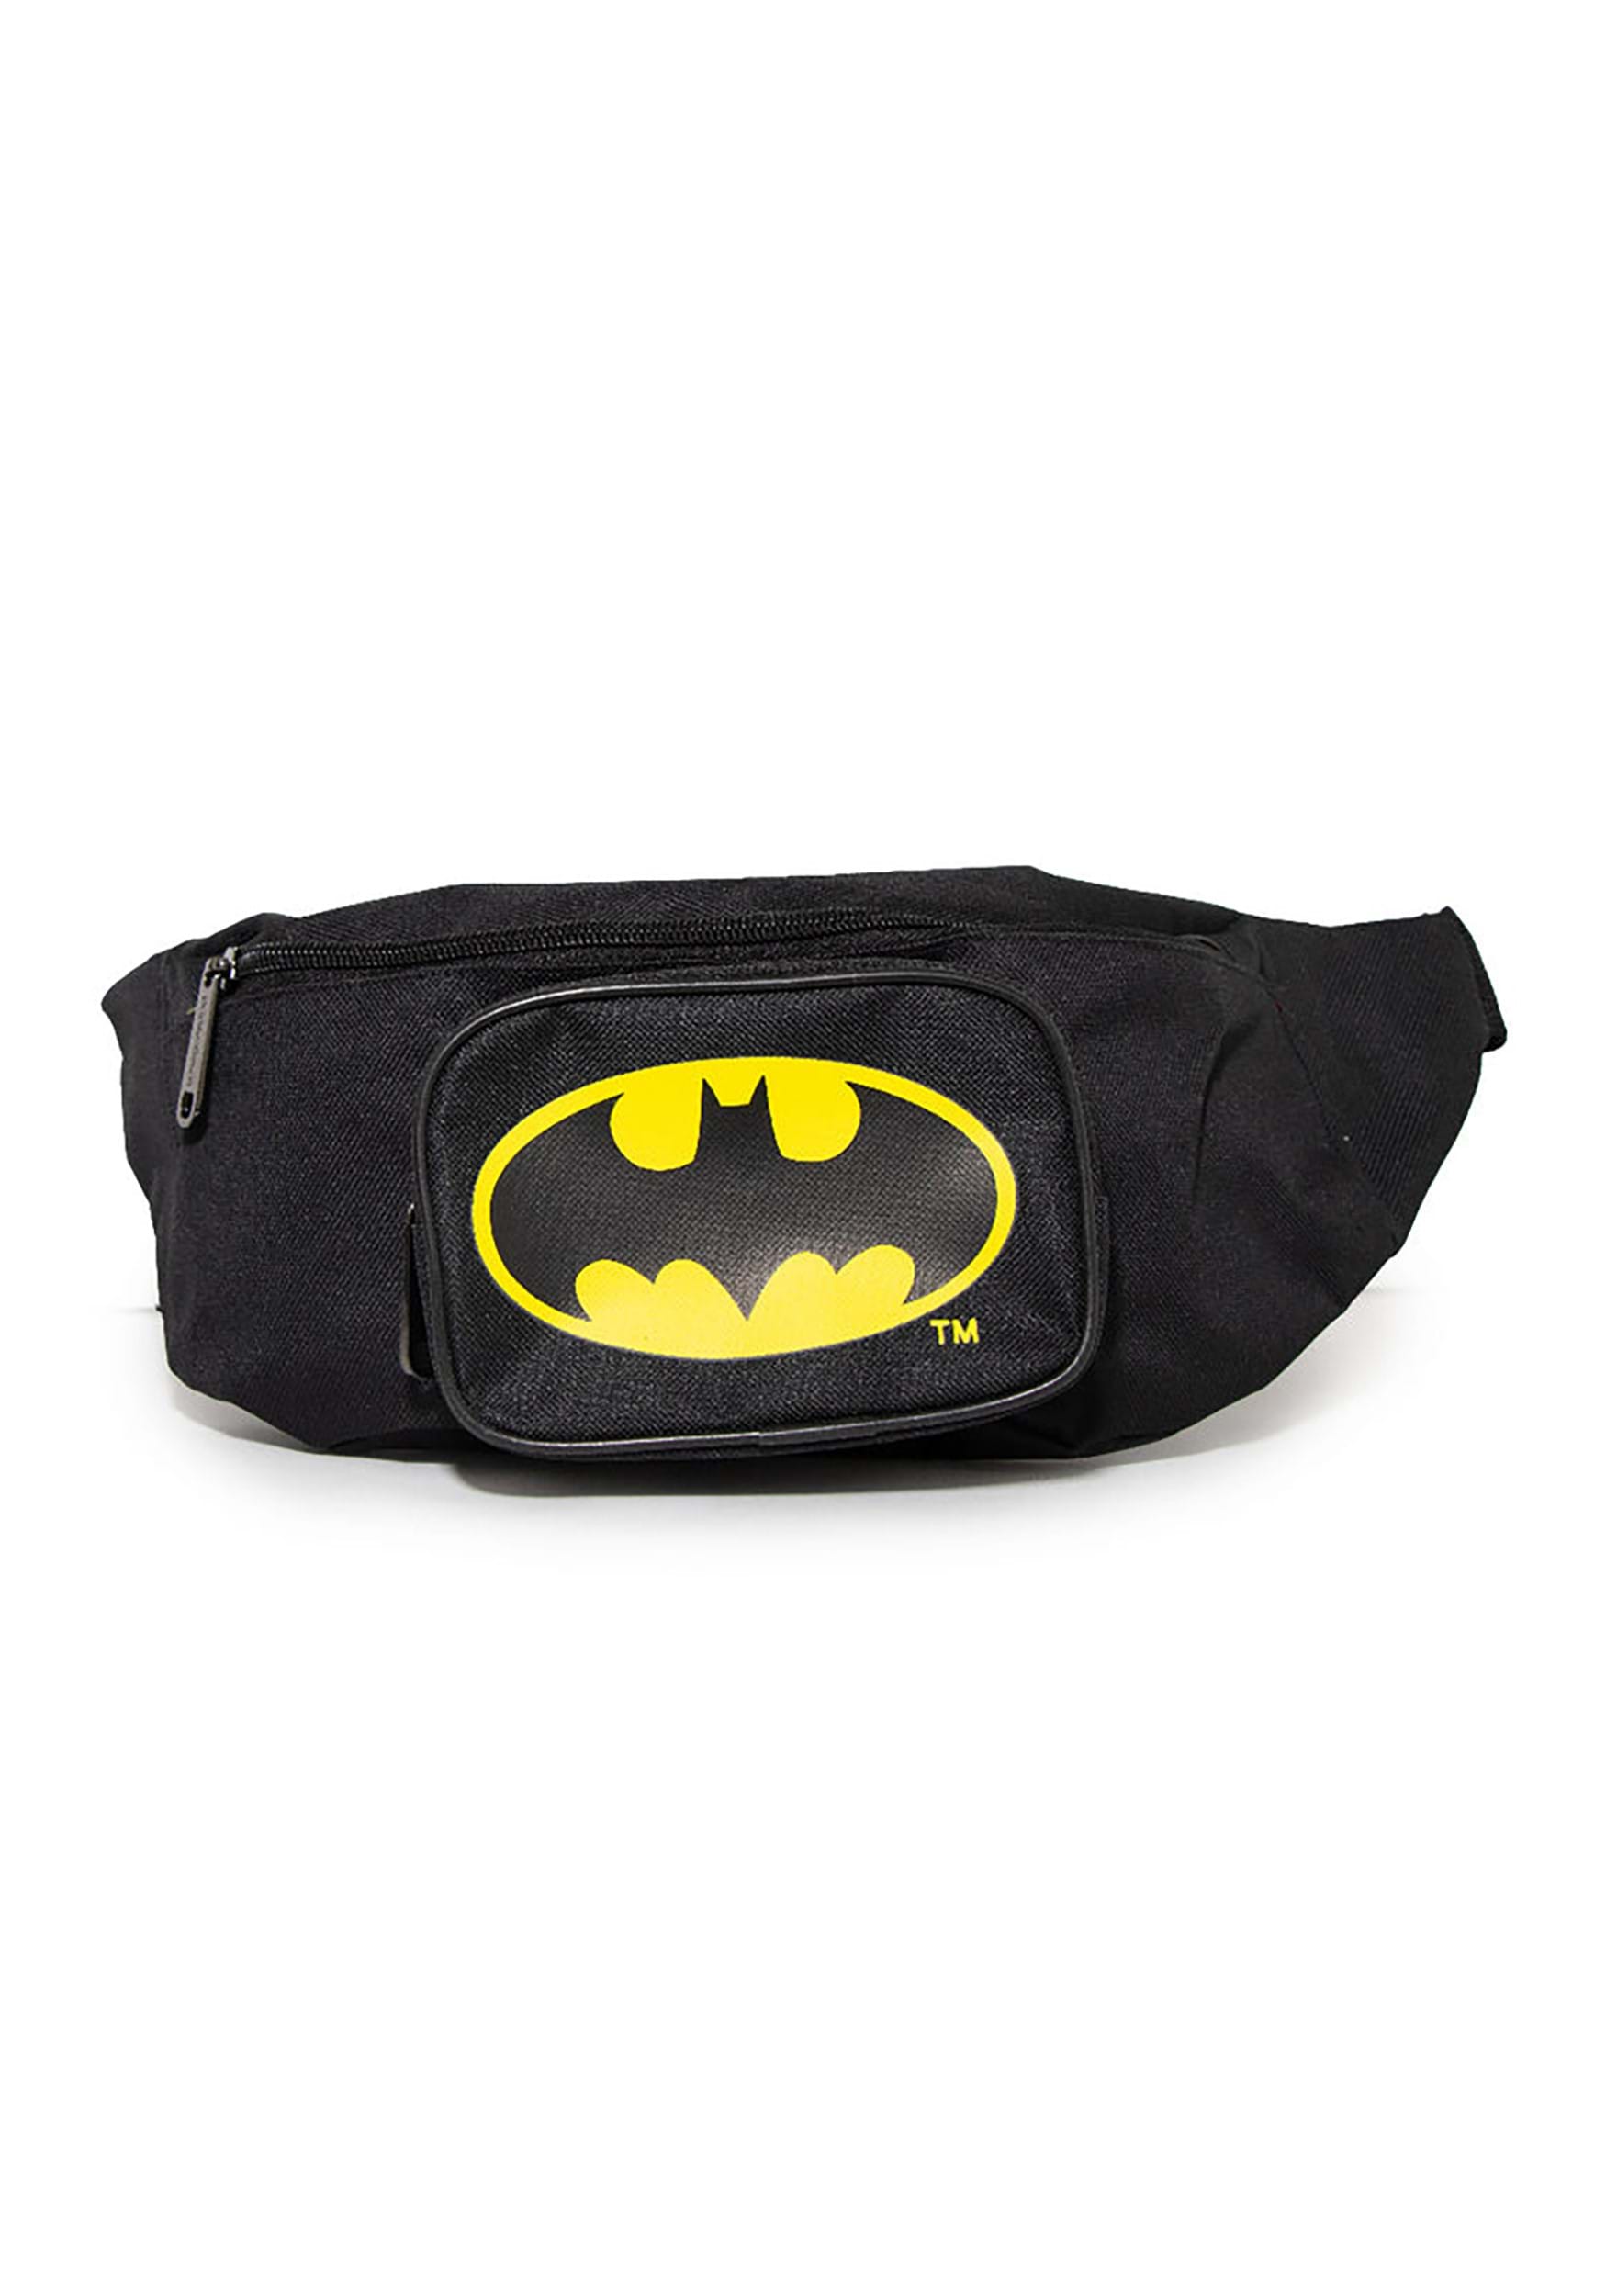 Batman Bat Signal Double Zipper Fanny Pack Bag , Batman Accessories